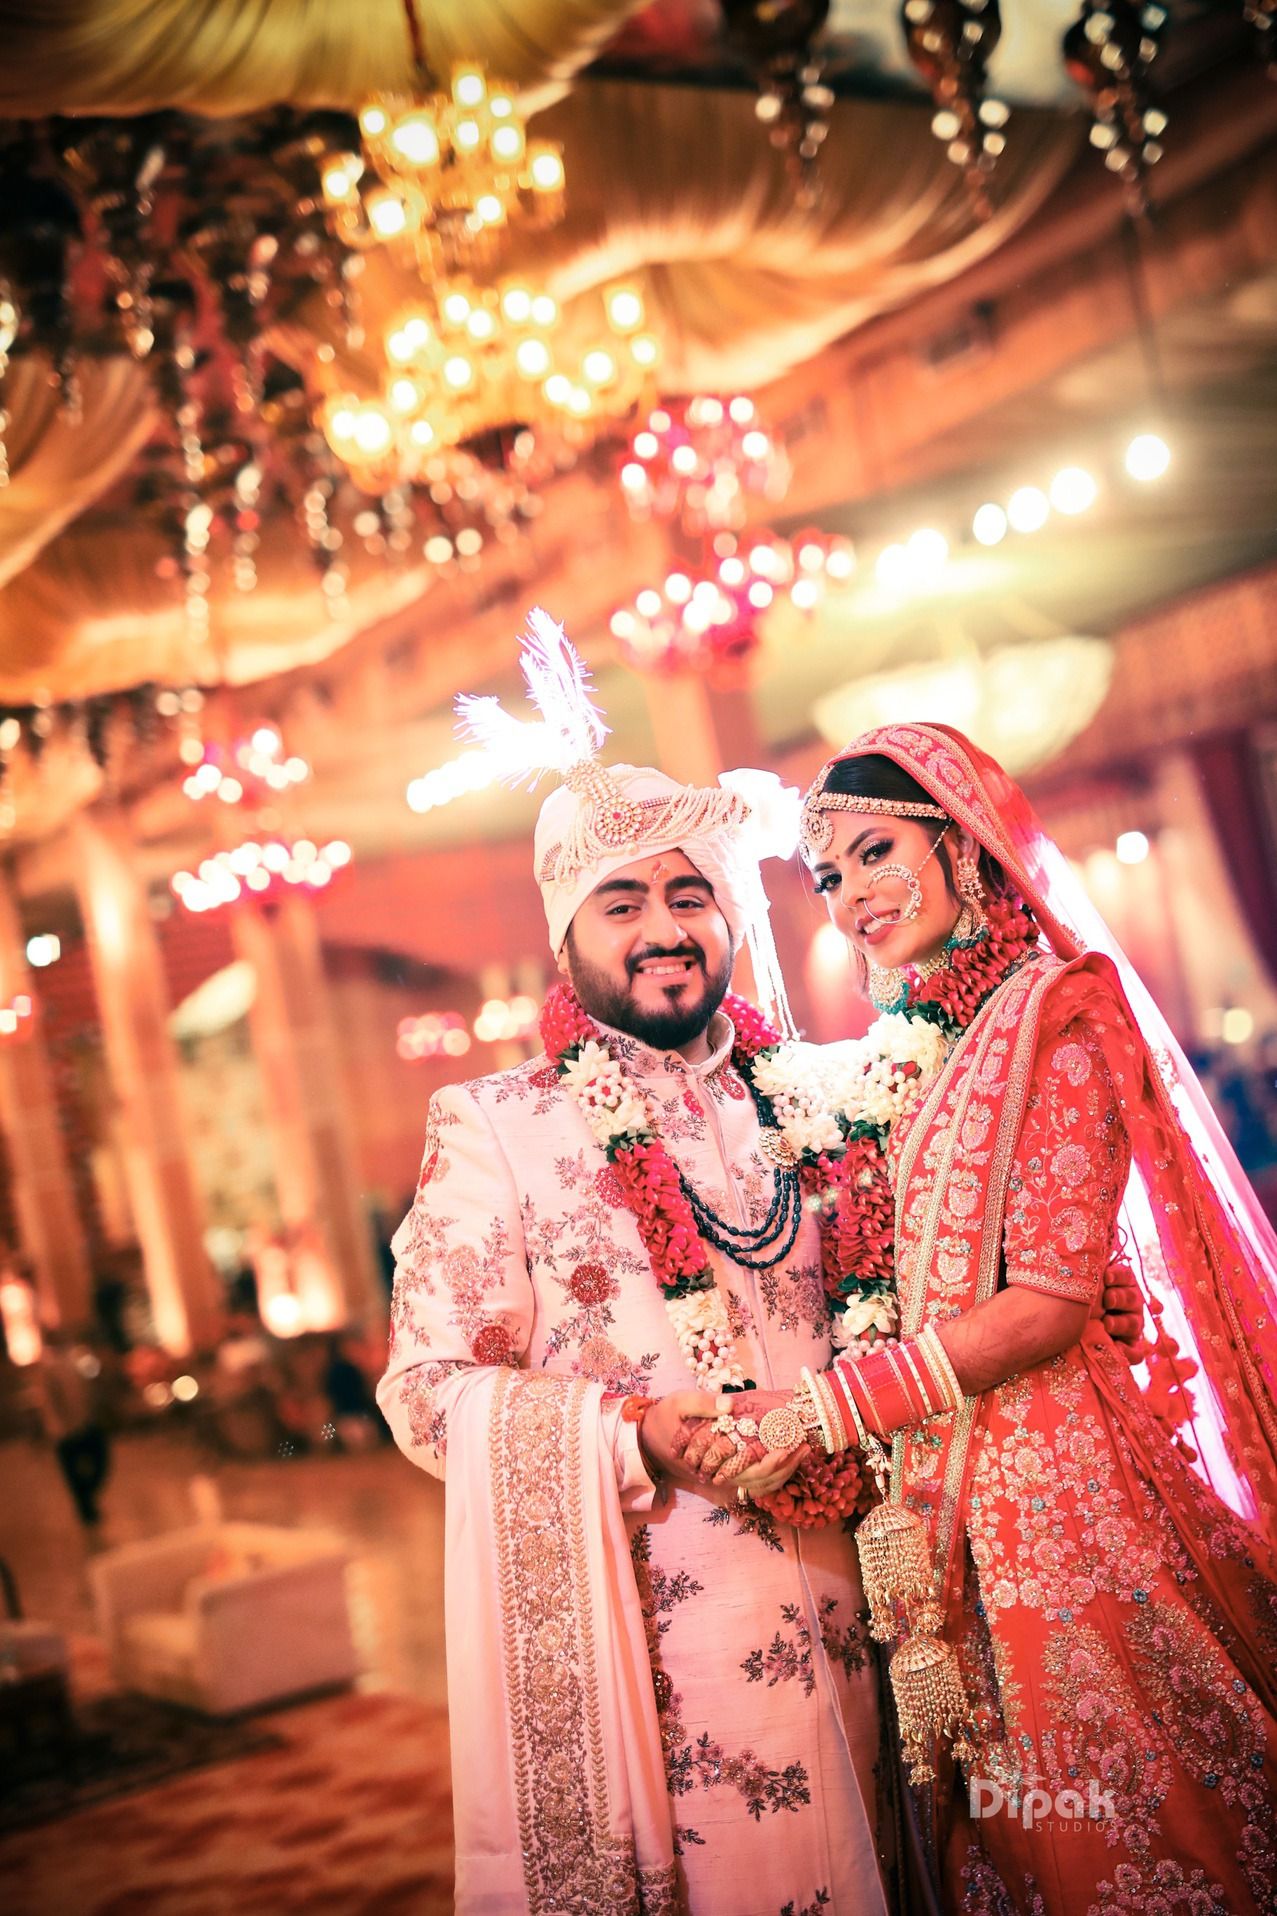 Couples Of Dipak Studios Wedding